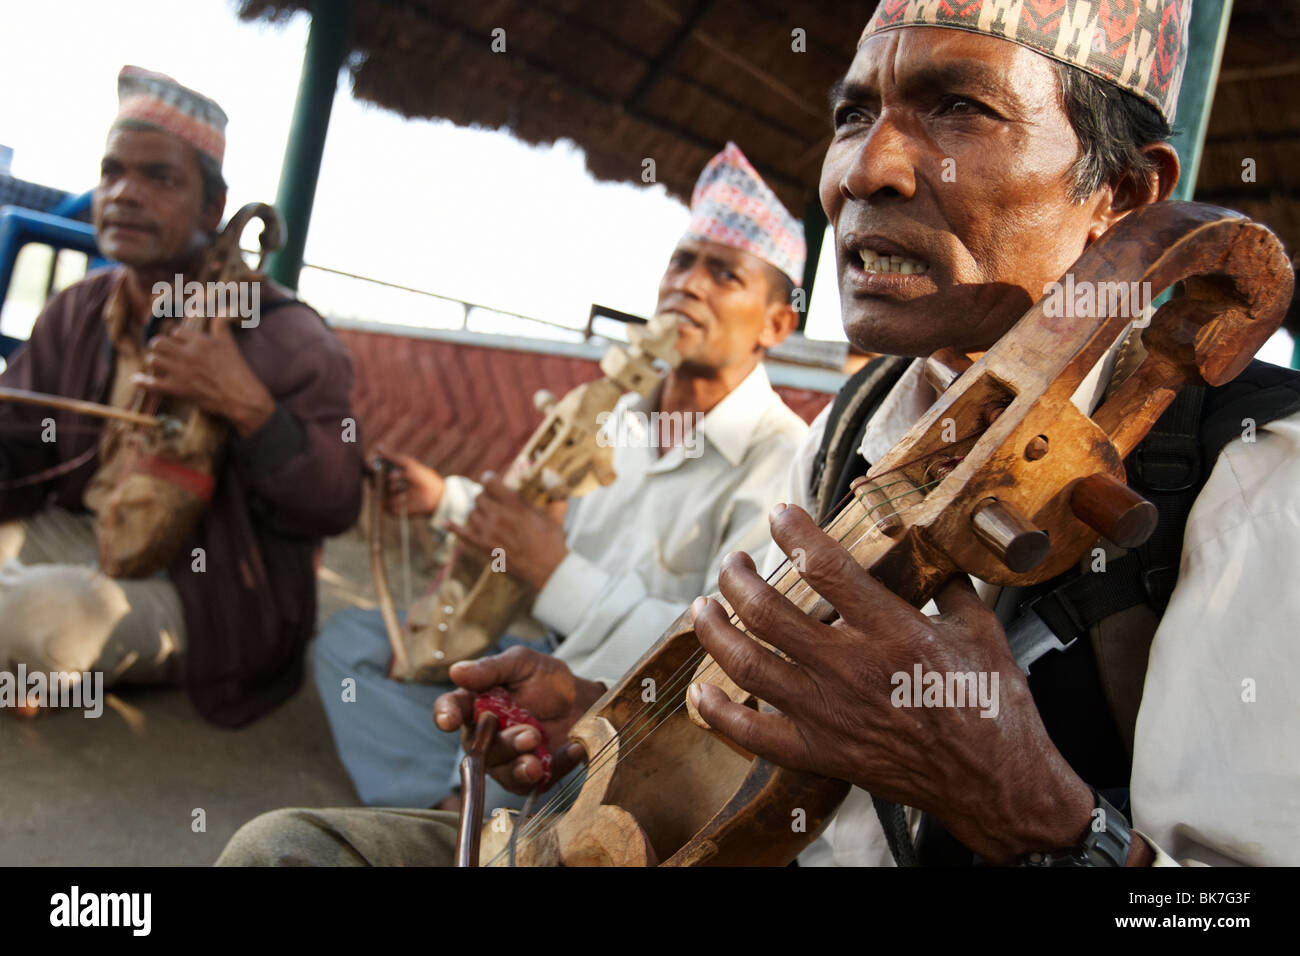 Les musiciens jouent d'un instrument à cordes traditionnel au lac Begnas près de Pokhara, Népal, le mardi 27 octobre 2009. Banque D'Images